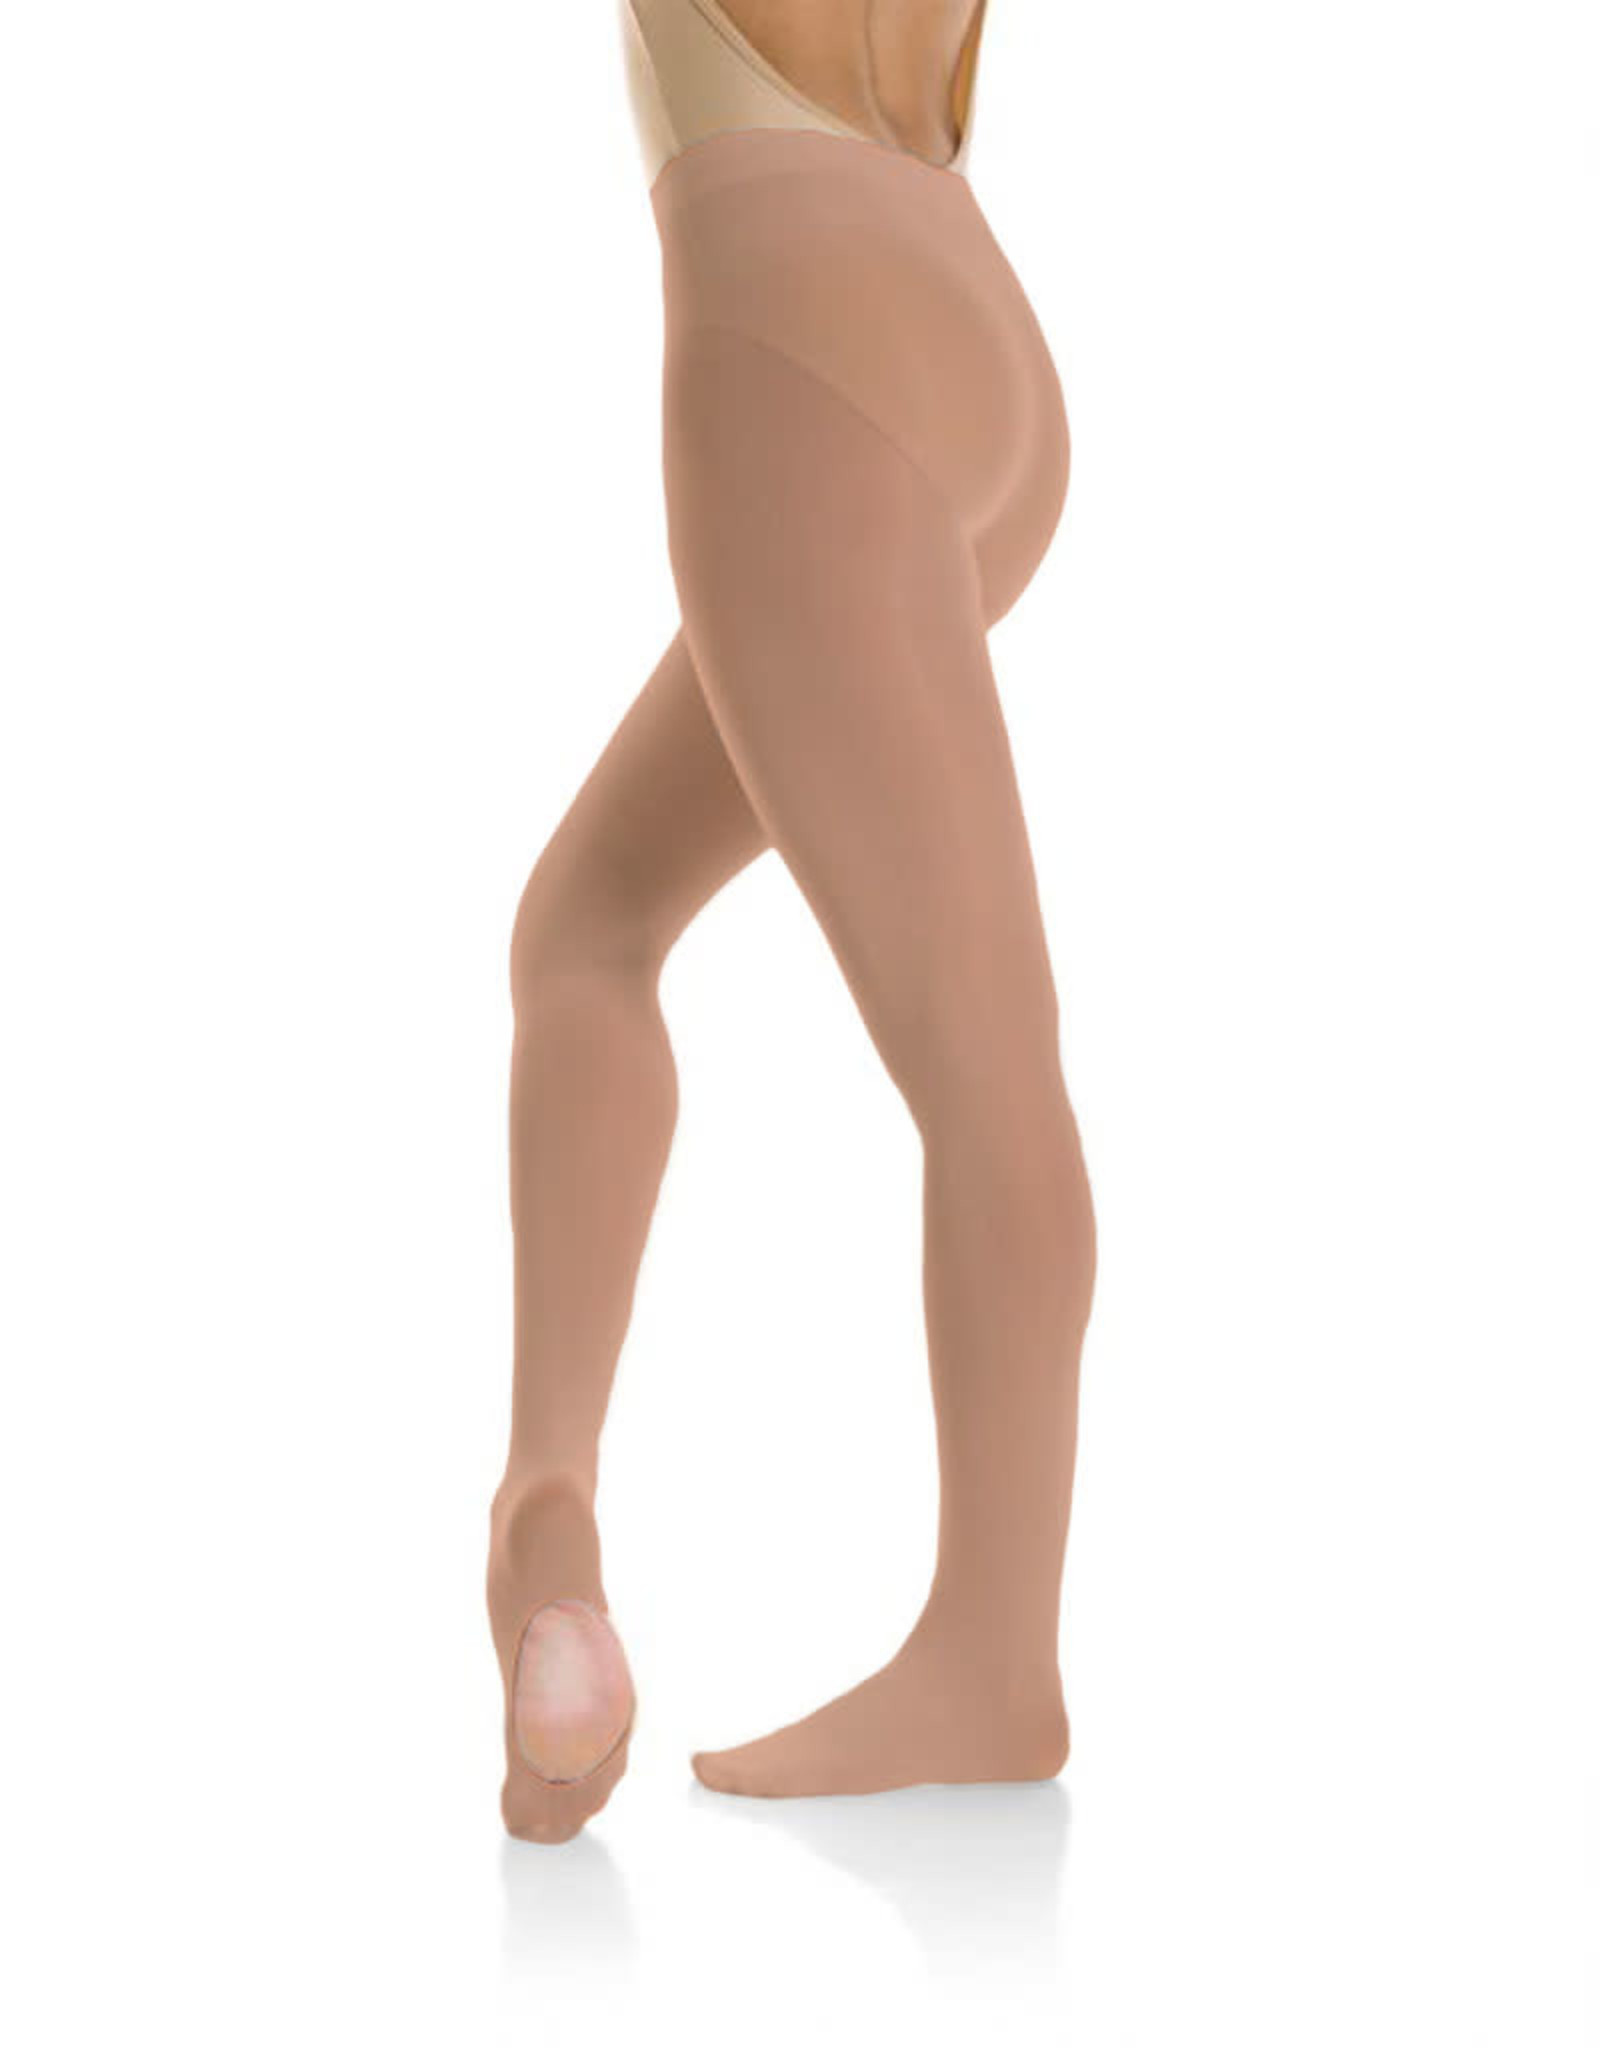 Mondor Ballet Tight Mondor 319 -  Convertible Foot, Ultra soft, stretch knitted waistband